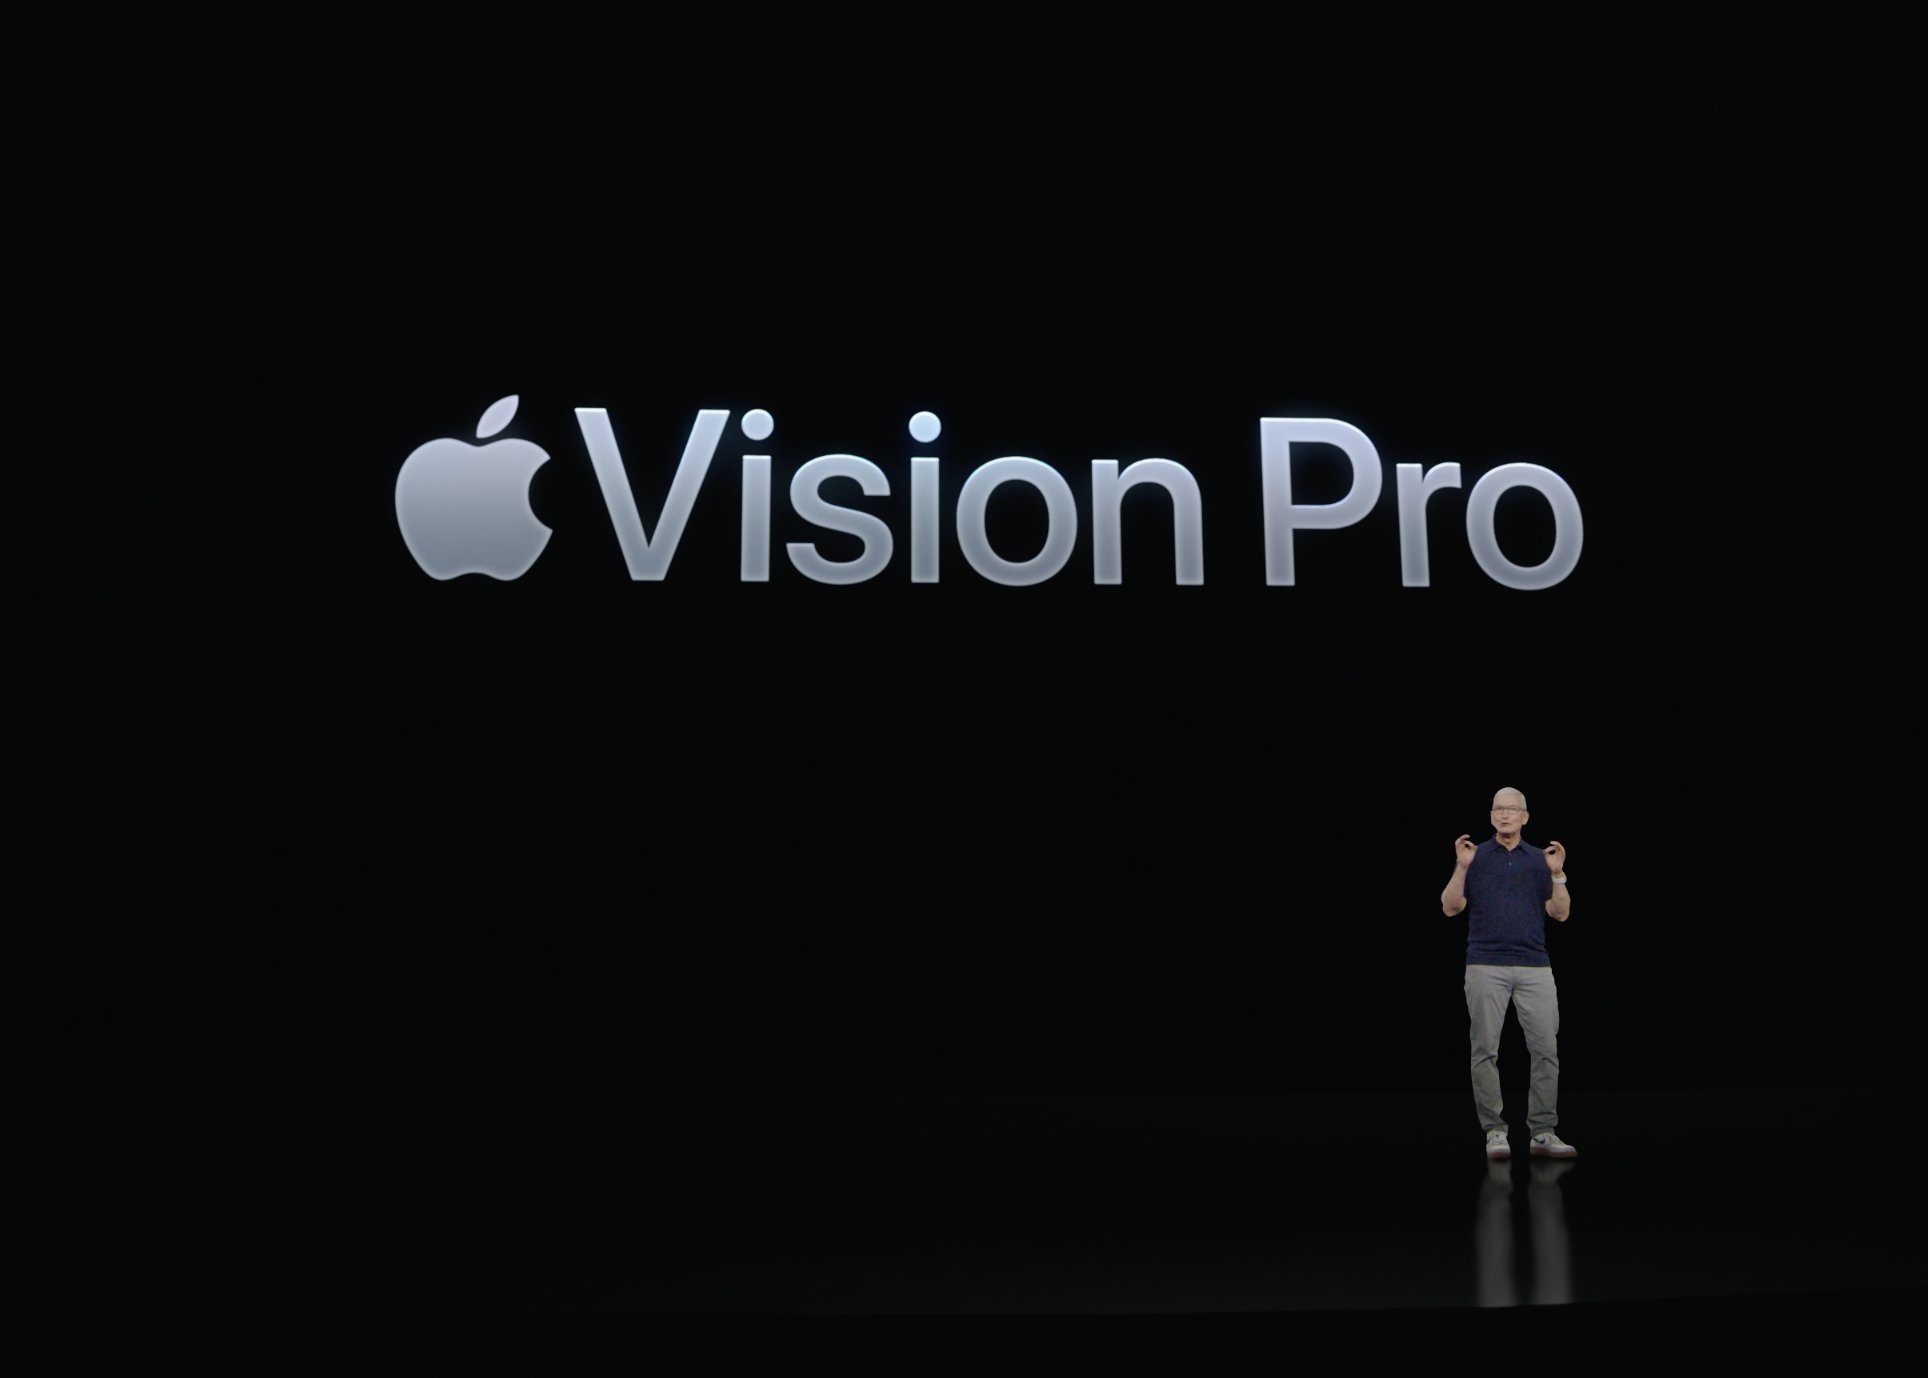 Tim Cook en uno de los One More Thing más grandes de Apple, presentando las Vision Pro